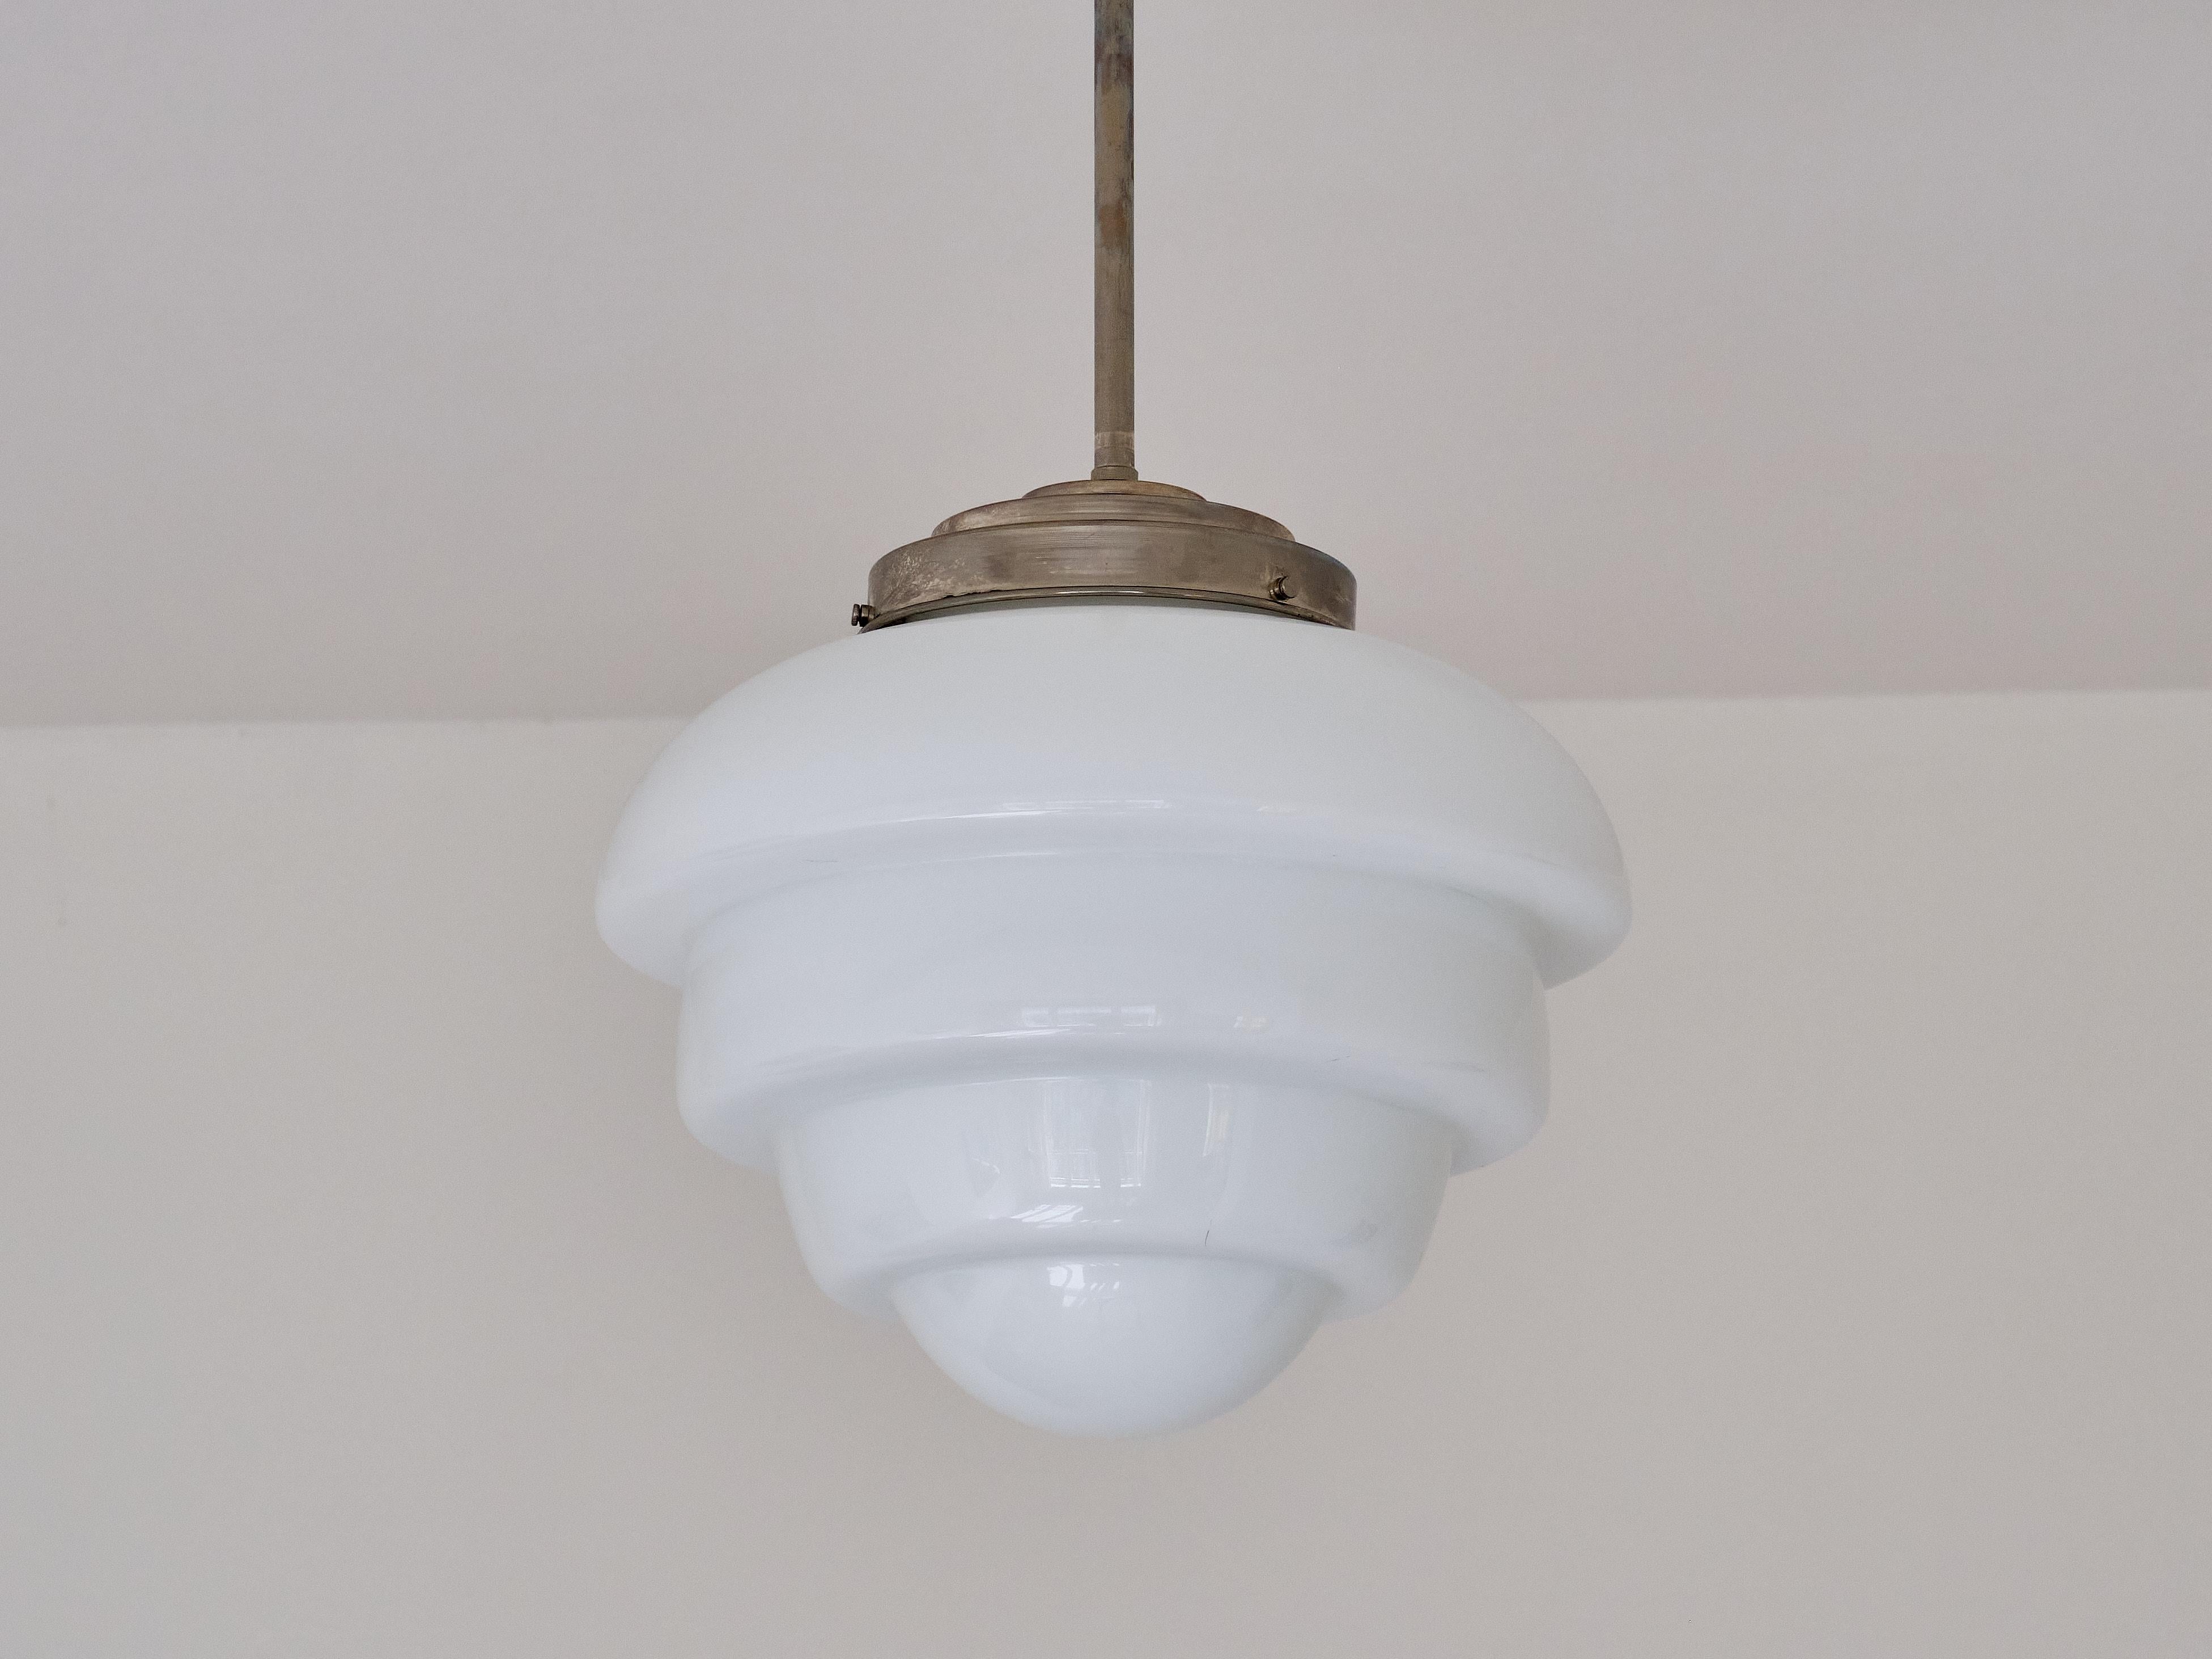 Cette rare lampe suspendue a été fabriquée aux Pays-Bas dans les années 1930. La teinte frappante est en forme d'artichaut à plusieurs étages vers le bas. L'abat-jour est en verre opalin blanc légèrement brillant. L'abat-jour est fixé au luminaire